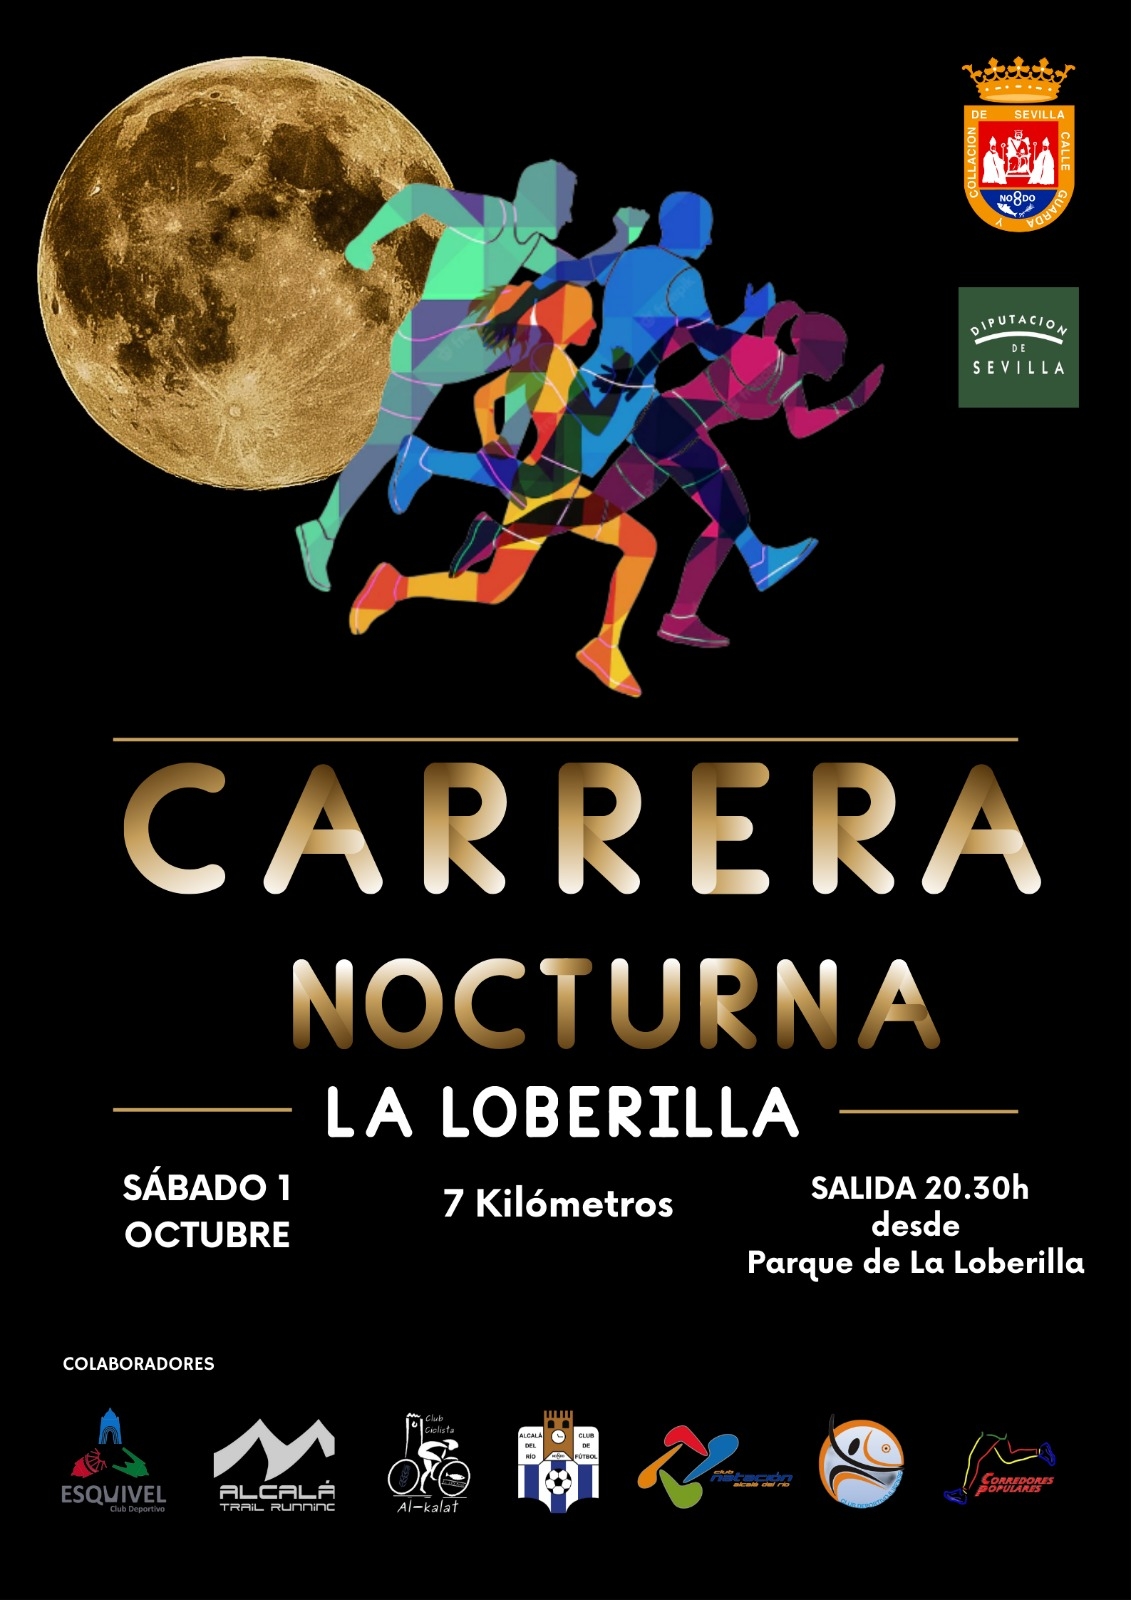 CARRERA NOCTURNA LA LOBERILLA - Register